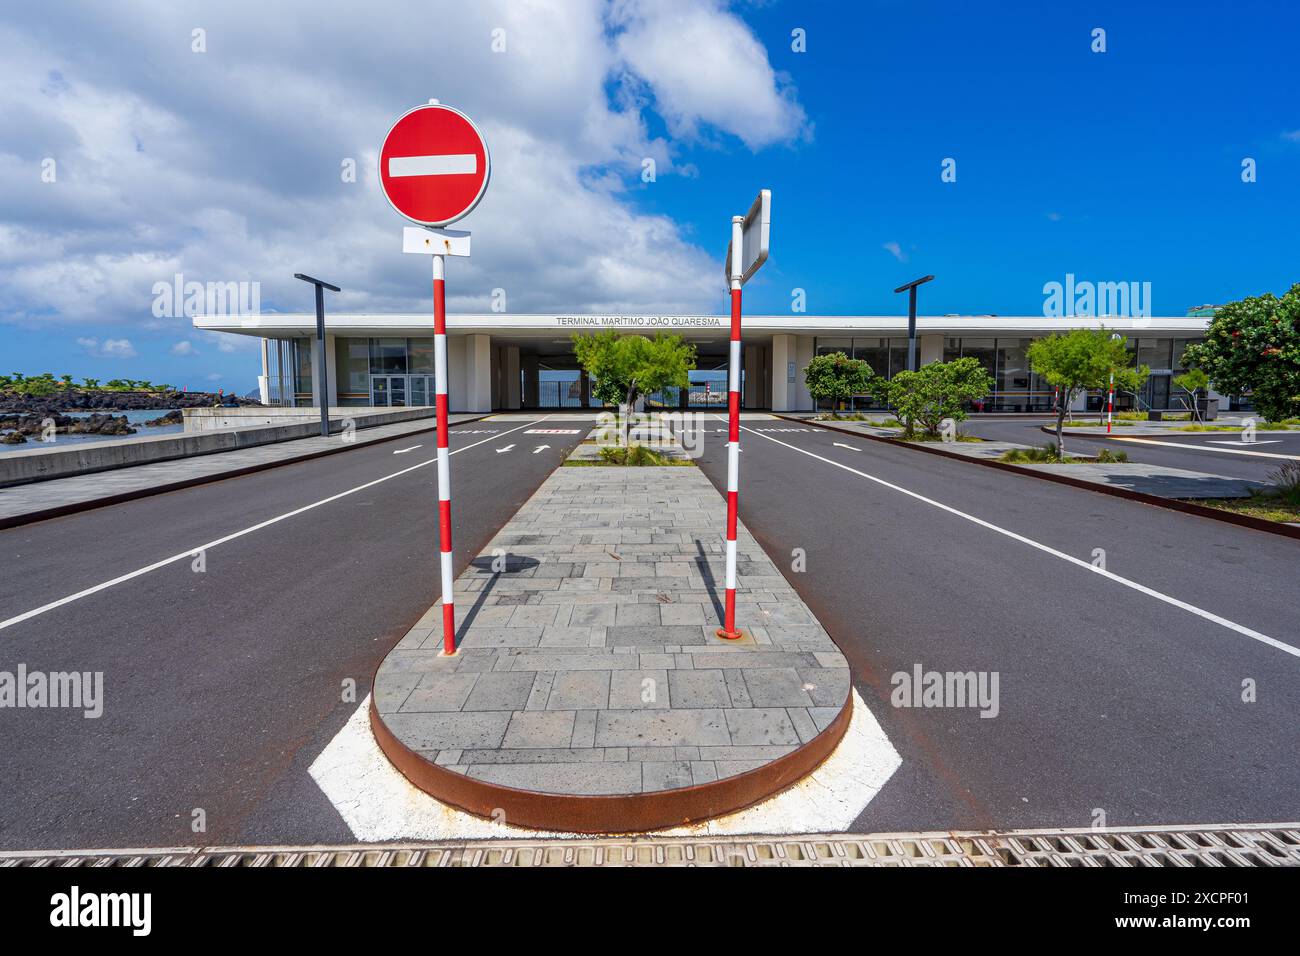 Porte d'accès pour les véhicules à moteur en ferry de l'île de Pico à Faial et l'île de Sao Jorge, Joao Quaresma terminal maritime.Pico-açores-Portugal. Banque D'Images